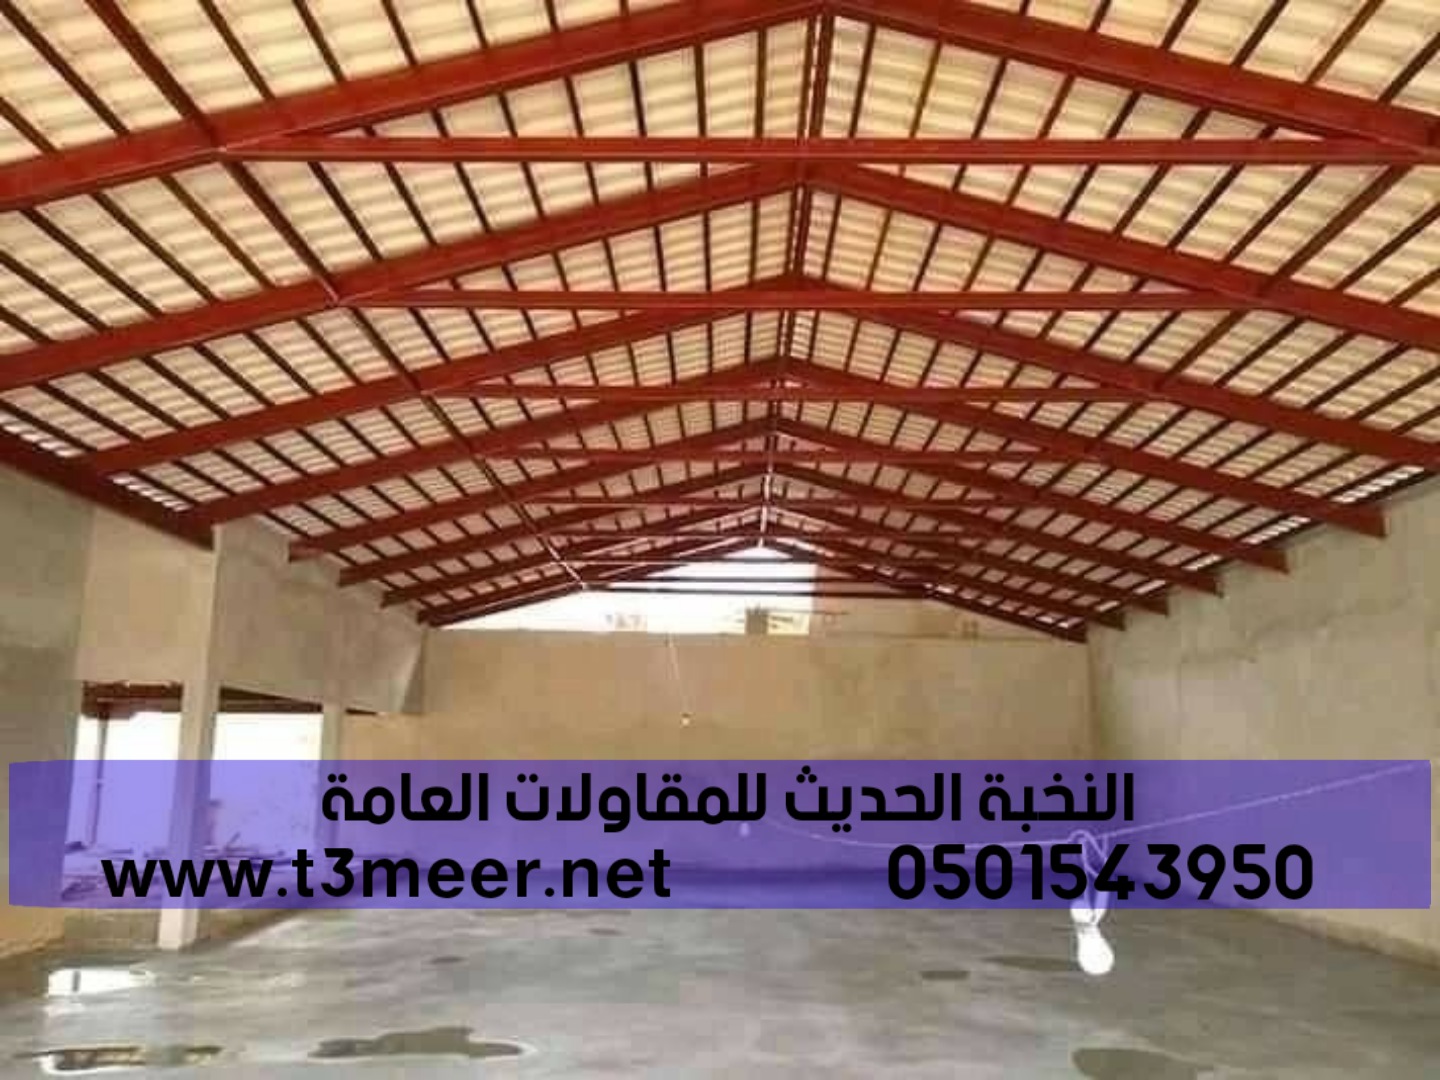 افضل شركة بناء هناجر في جدة , 0501543950 P_2276wxp9n5